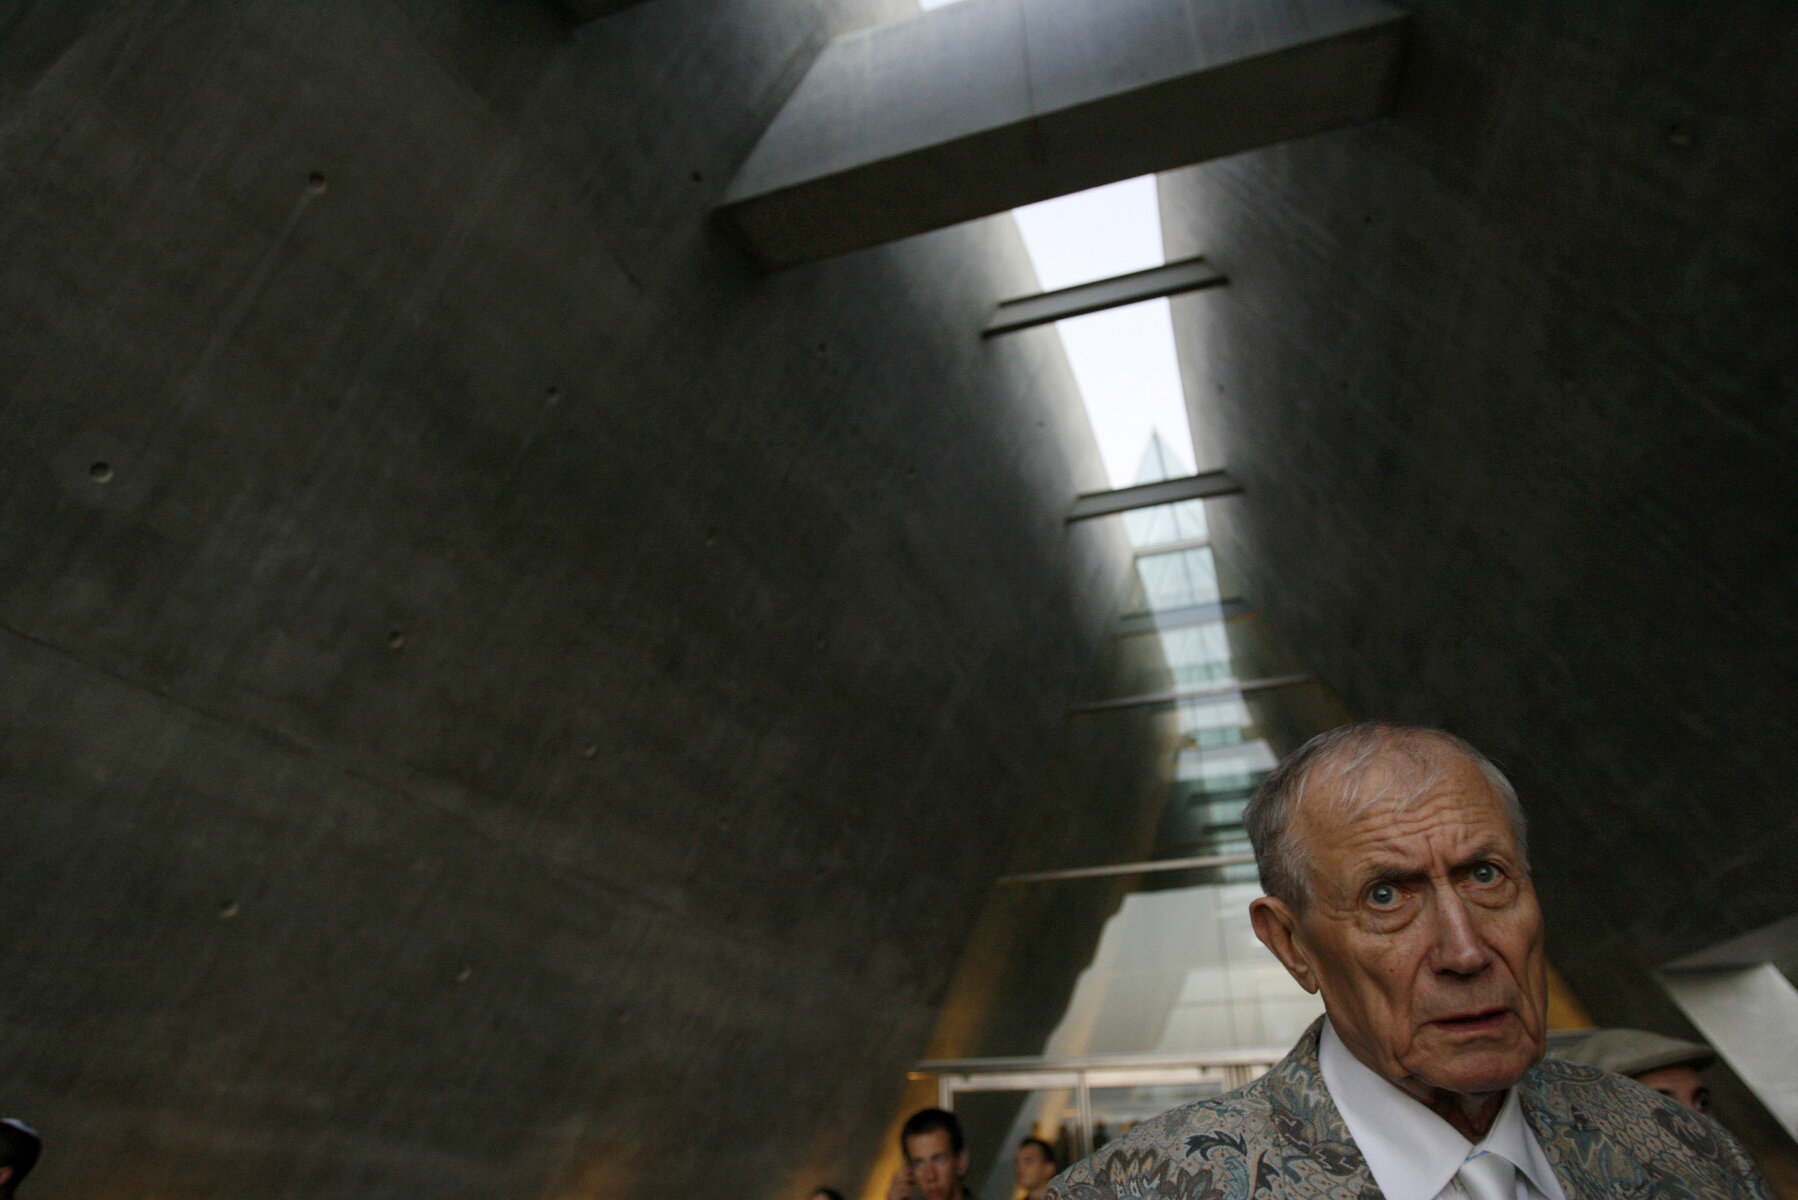 <p>Евгений Евтушенко во время посещения мемориала жертвам Холокоста Яд ва-Шем в Иерусалиме 15 ноября 2007 года.</p>